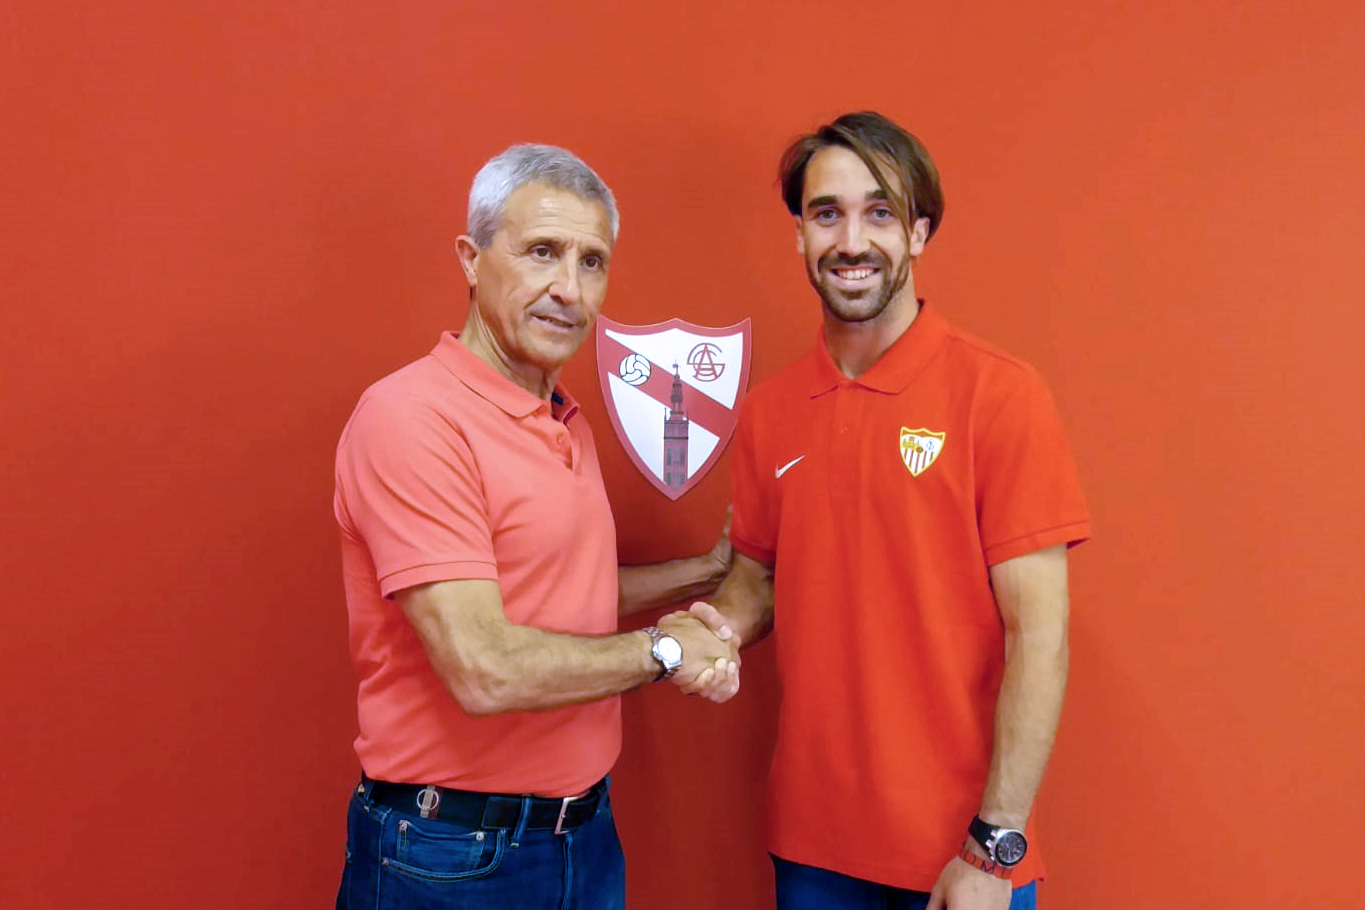 Manu Sánchez, nuevo fichaje del Sevilla Atlético, estrecha la mano de Pablo Blanco durante su presentación